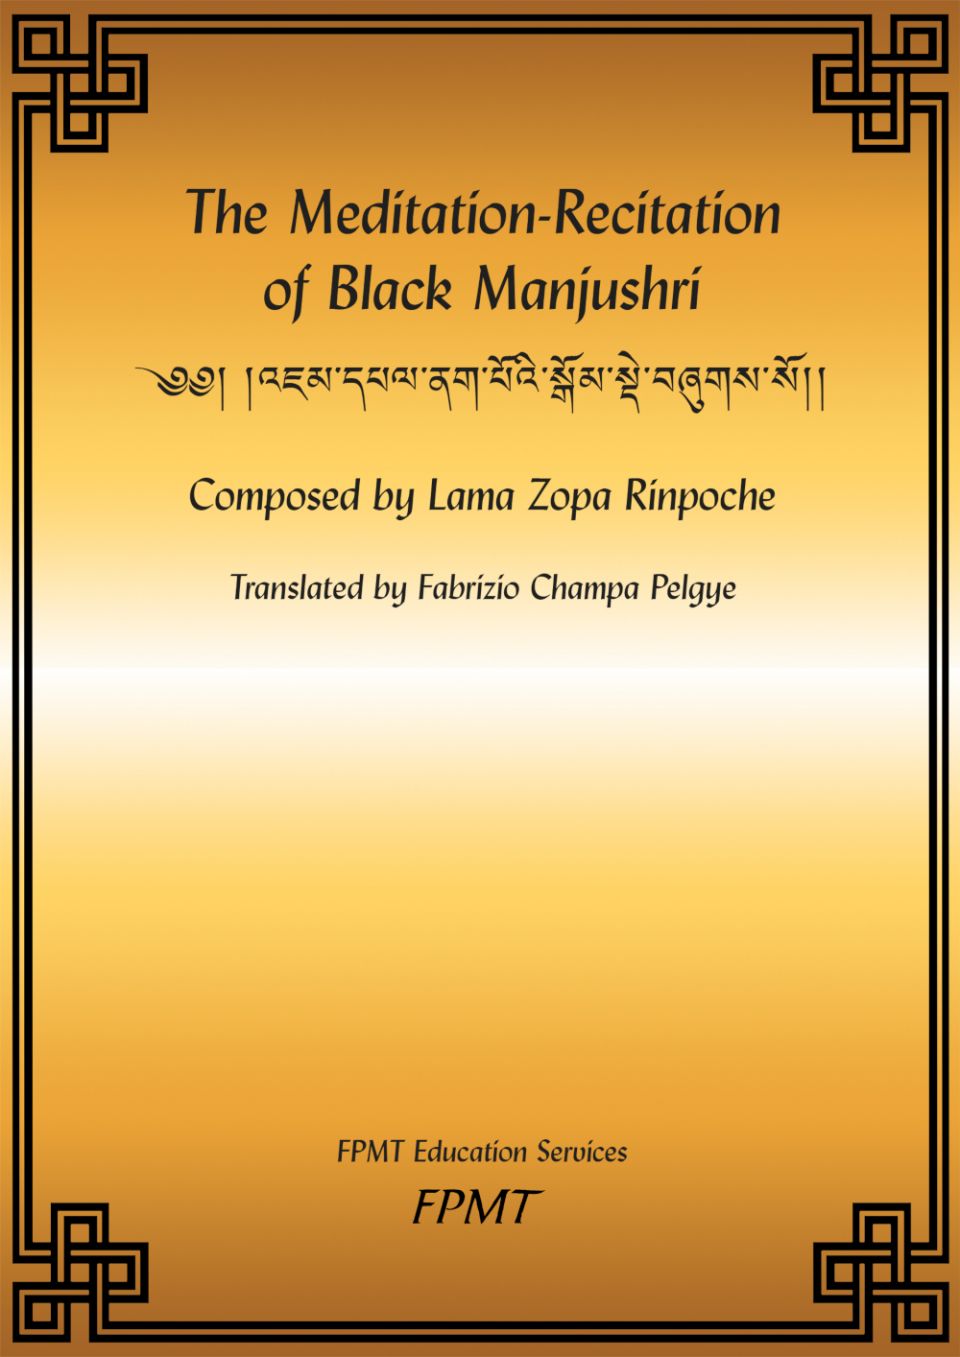 The Meditation-Recitation of Black Manjushri